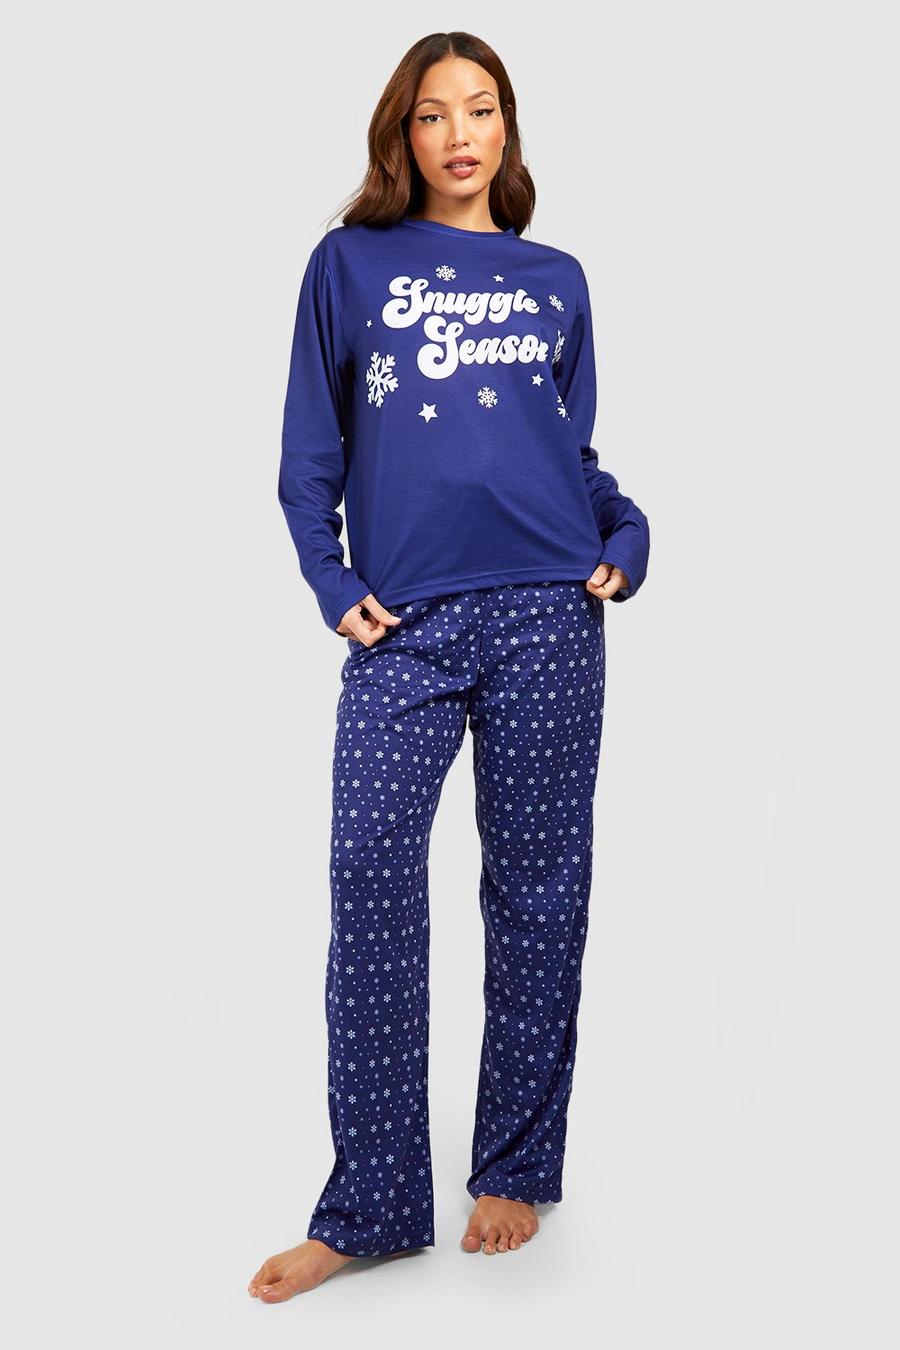 Blue Tall Snuggle Season Pyjamas